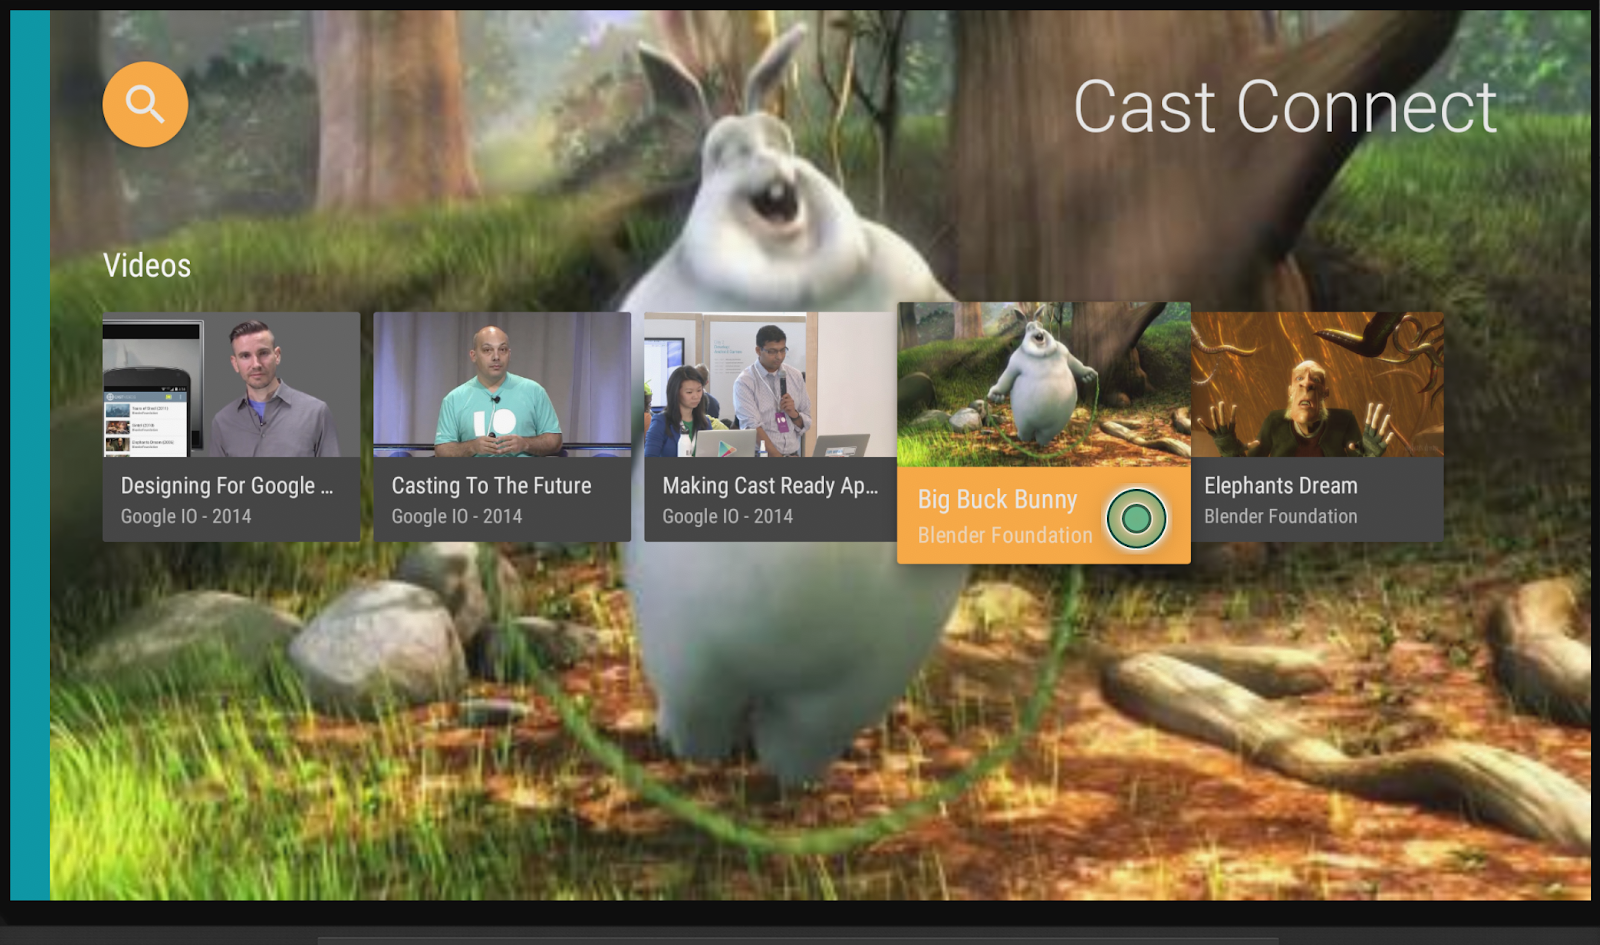 動画のフルスクリーン プレビューに重なって表示される一連の動画サムネイル（いずれか 1 つがハイライト表示されている）で、右上に「Cast Connect」の文字が表示されている